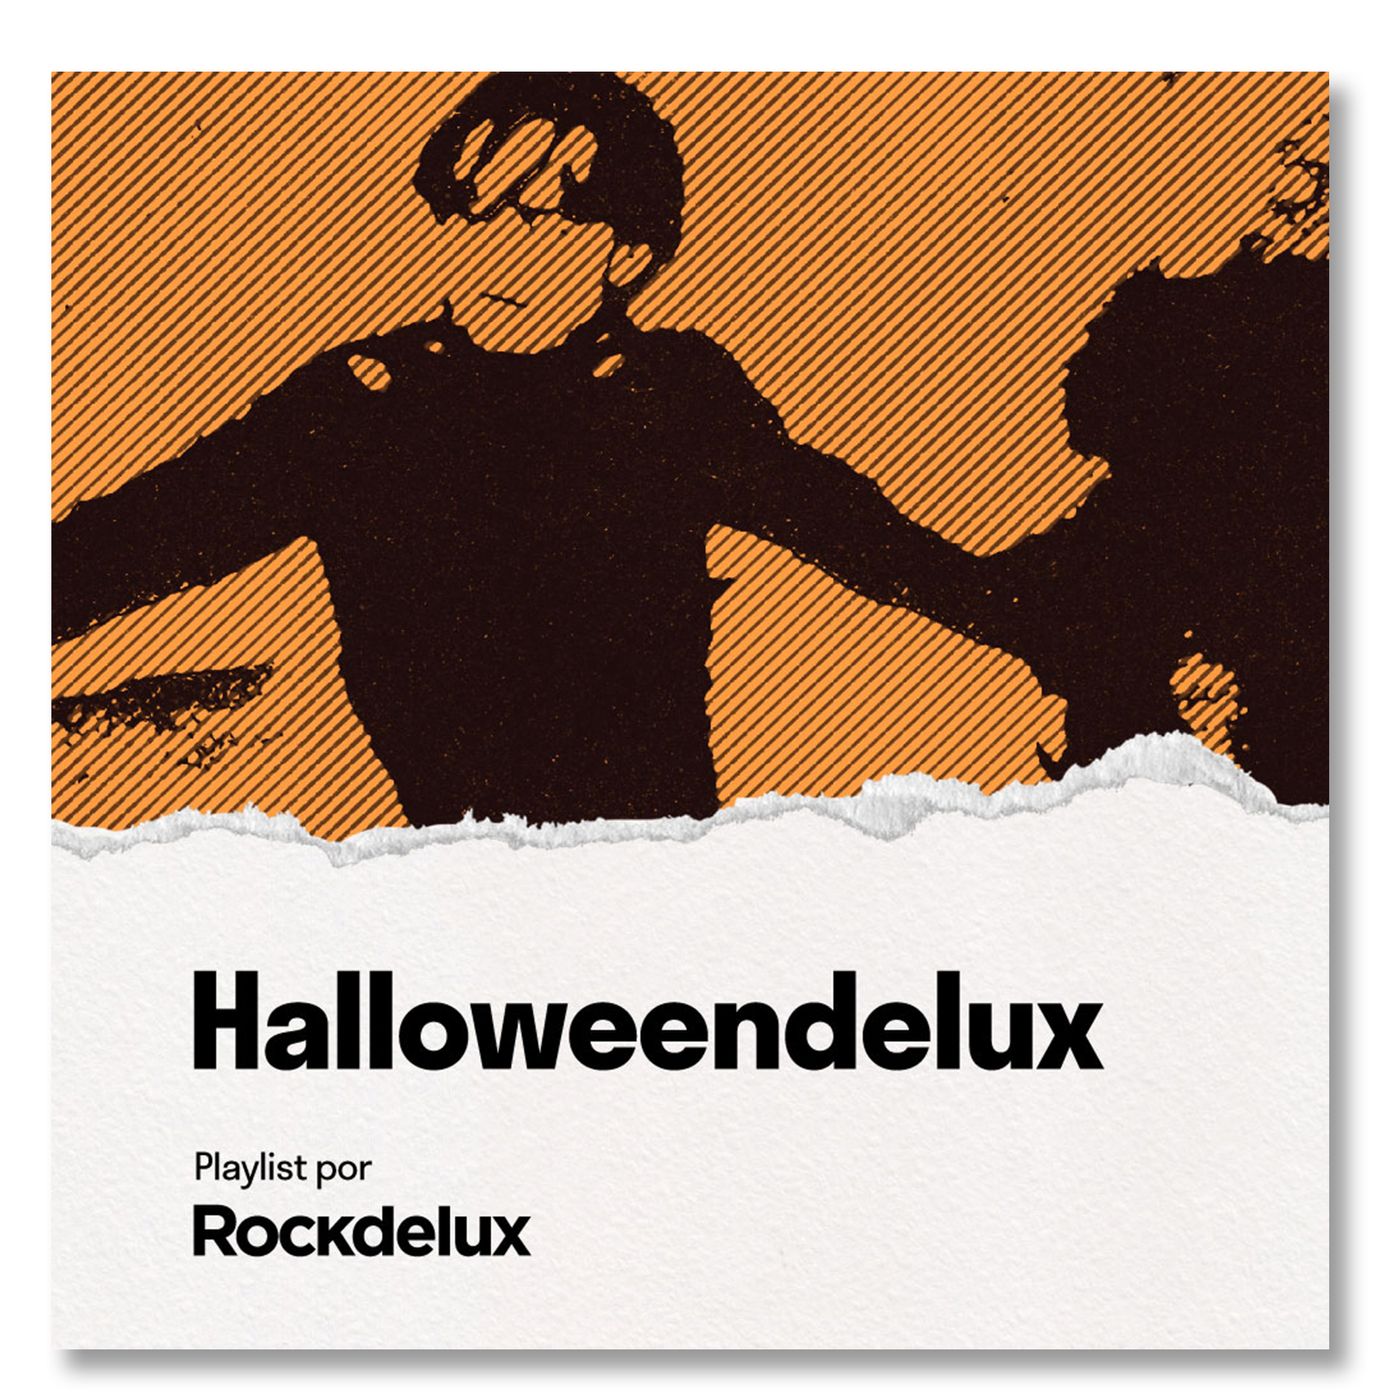 Halloweendelux: 15 canciones escalofriantes